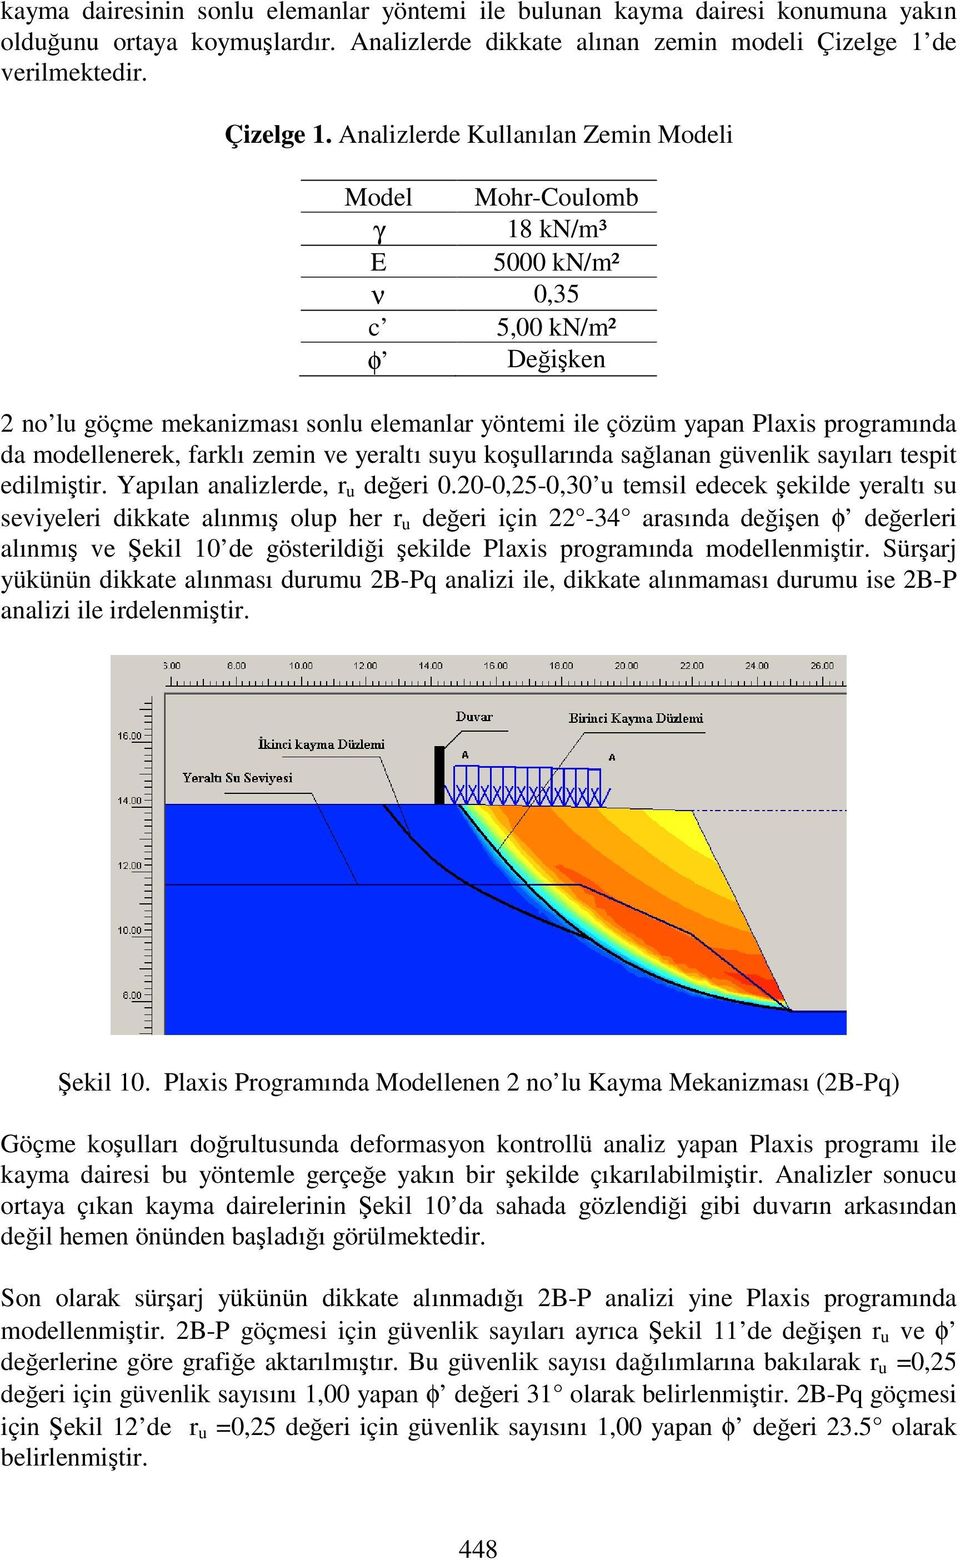 Analizlerde Kullanılan Zemin Modeli Model Mohr-Coulomb γ 18 kn/m³ E 5000 kn/m² ν 0,35 c 5,00 kn/m² φ Deiken 2 no lu göçme mekanizması sonlu elemanlar yöntemi ile çözüm yapan Plaxis programında da